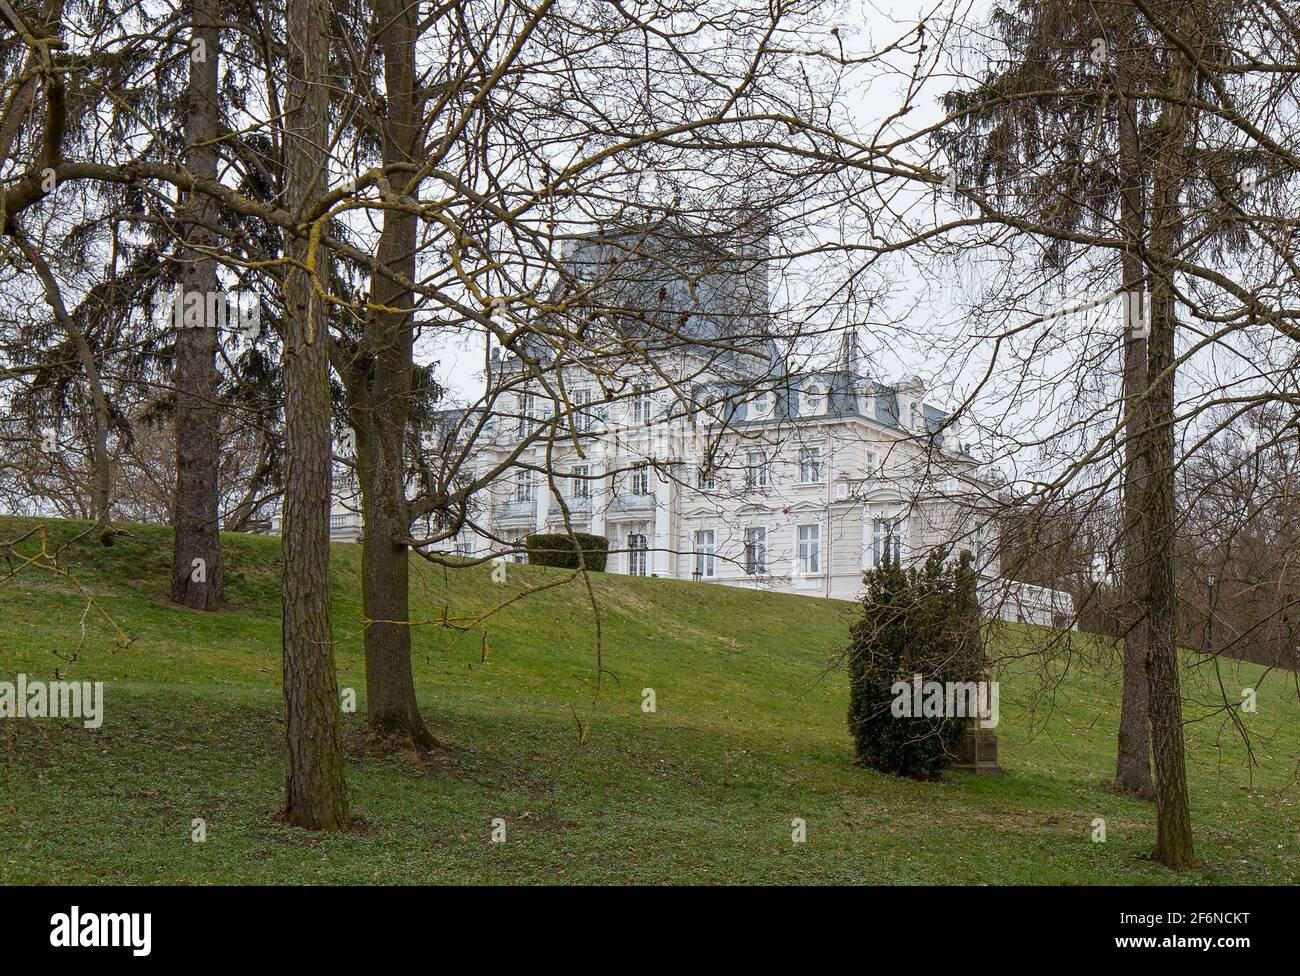 Palace and park in Zakrzewo, Wielkopolska province. Winter landscape, early spring. Stock Photo